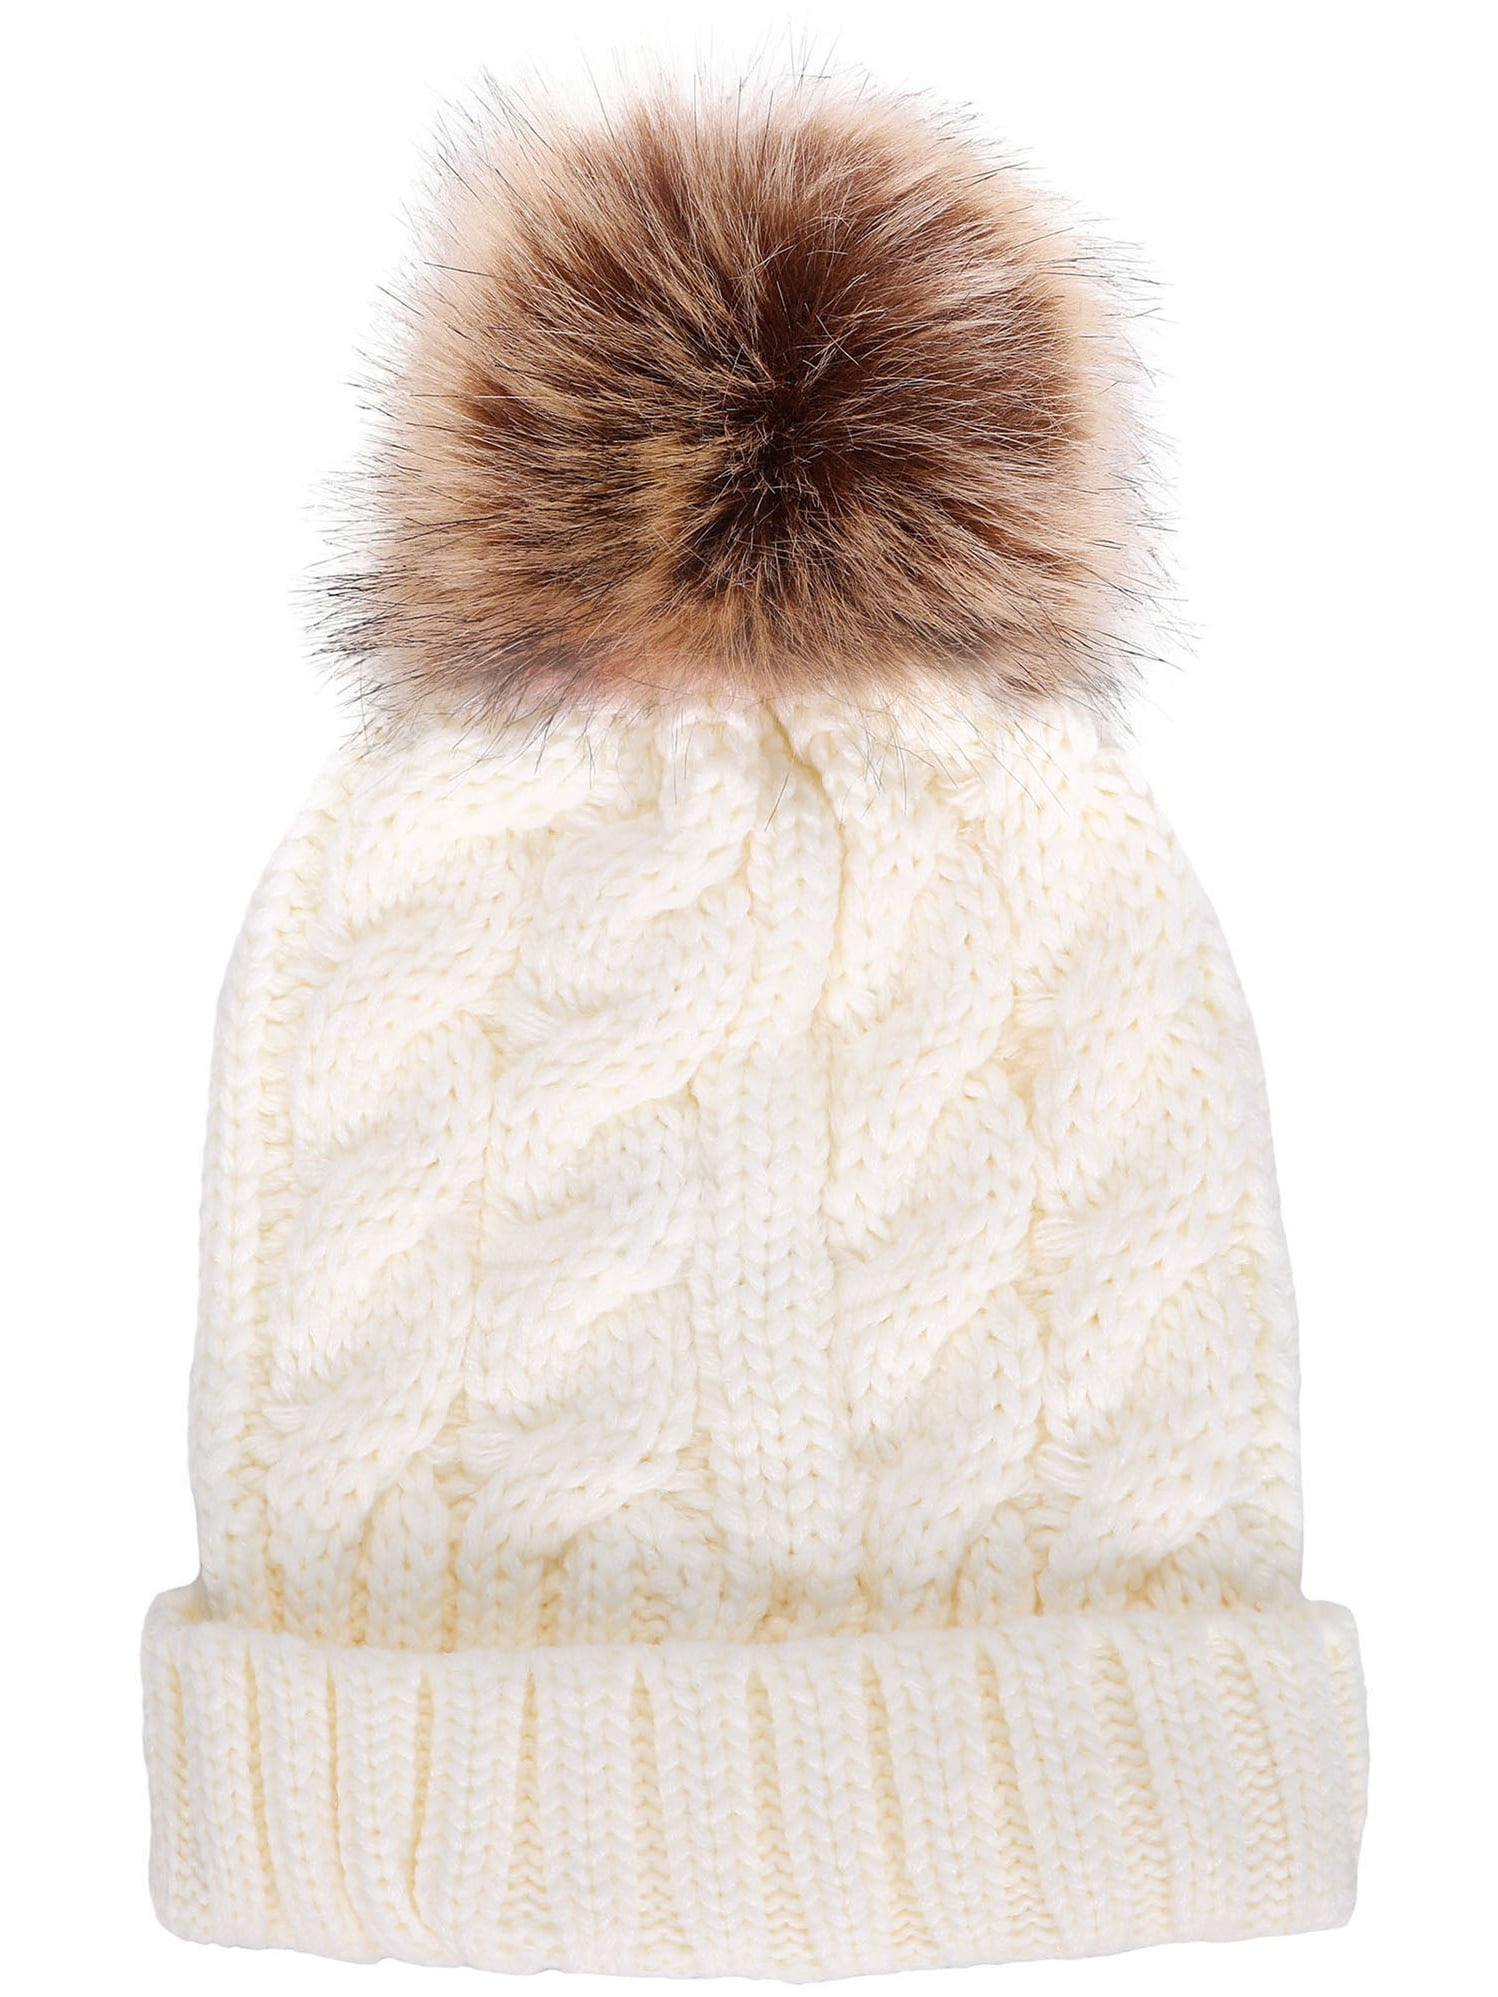 Simplicity Men / Women's Winter Hand Knit Faux Fur Pompoms Beanie Hat White